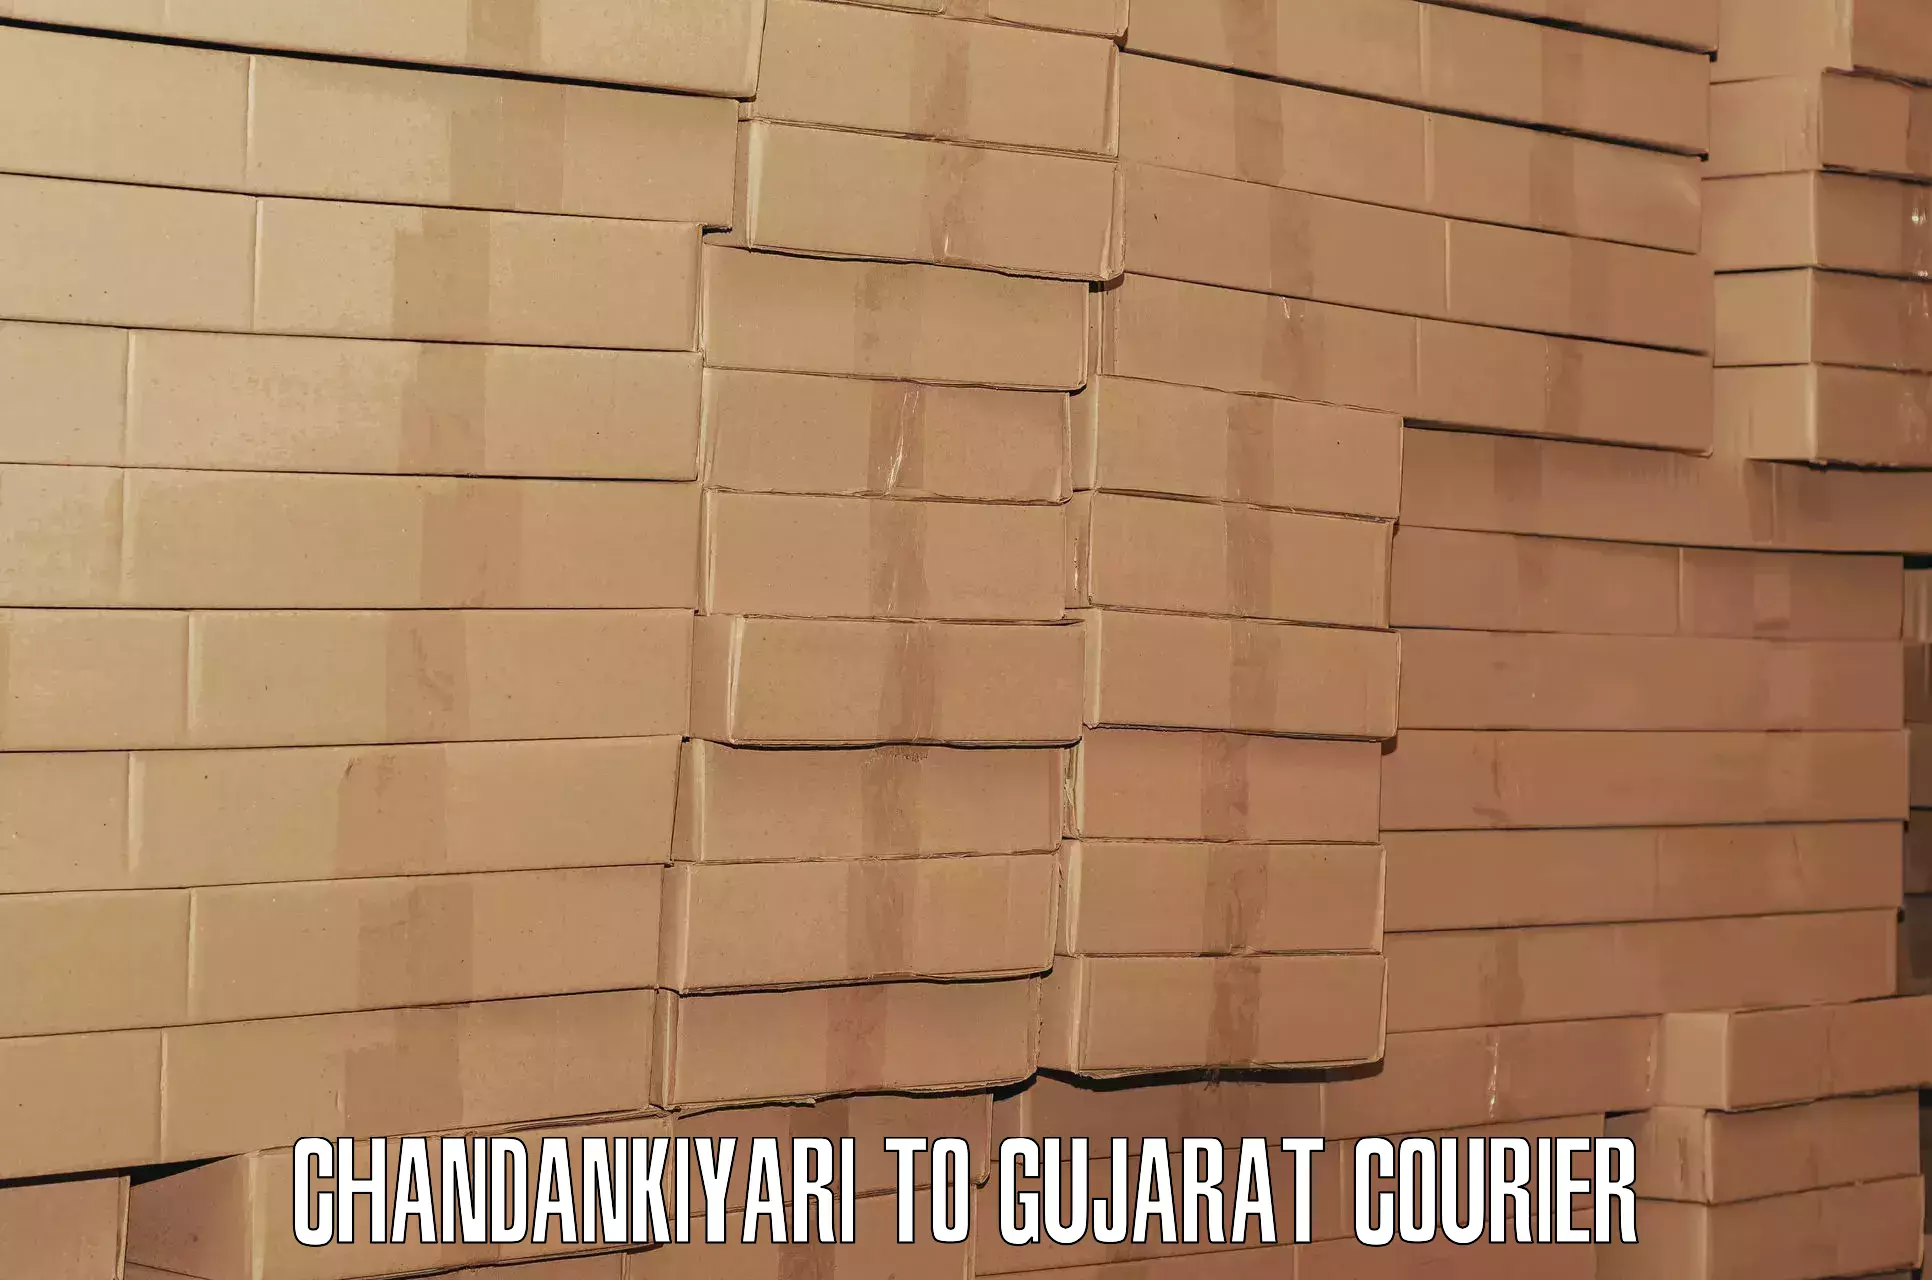 Single item baggage courier Chandankiyari to Gujarat